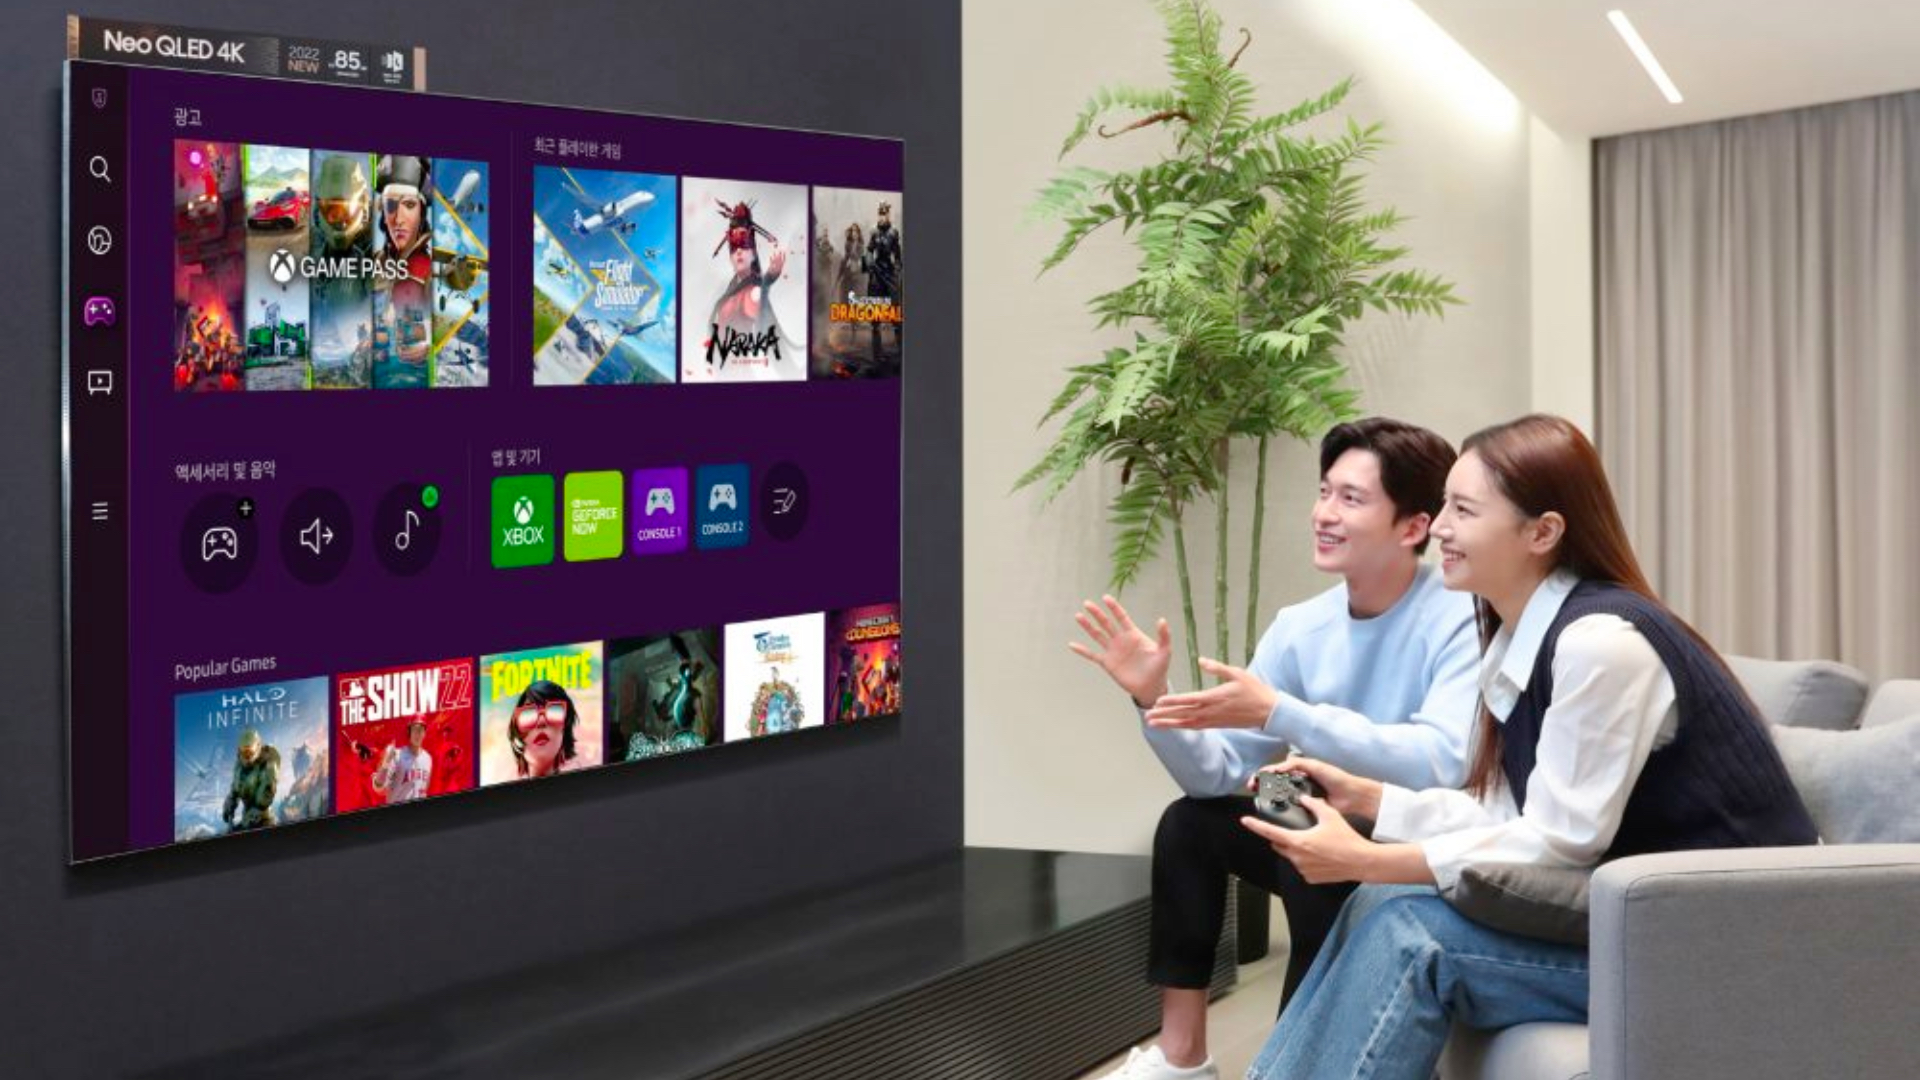 Controle Tv Samsung Com Gaming Hub, Xbox Game Pass E Geforce